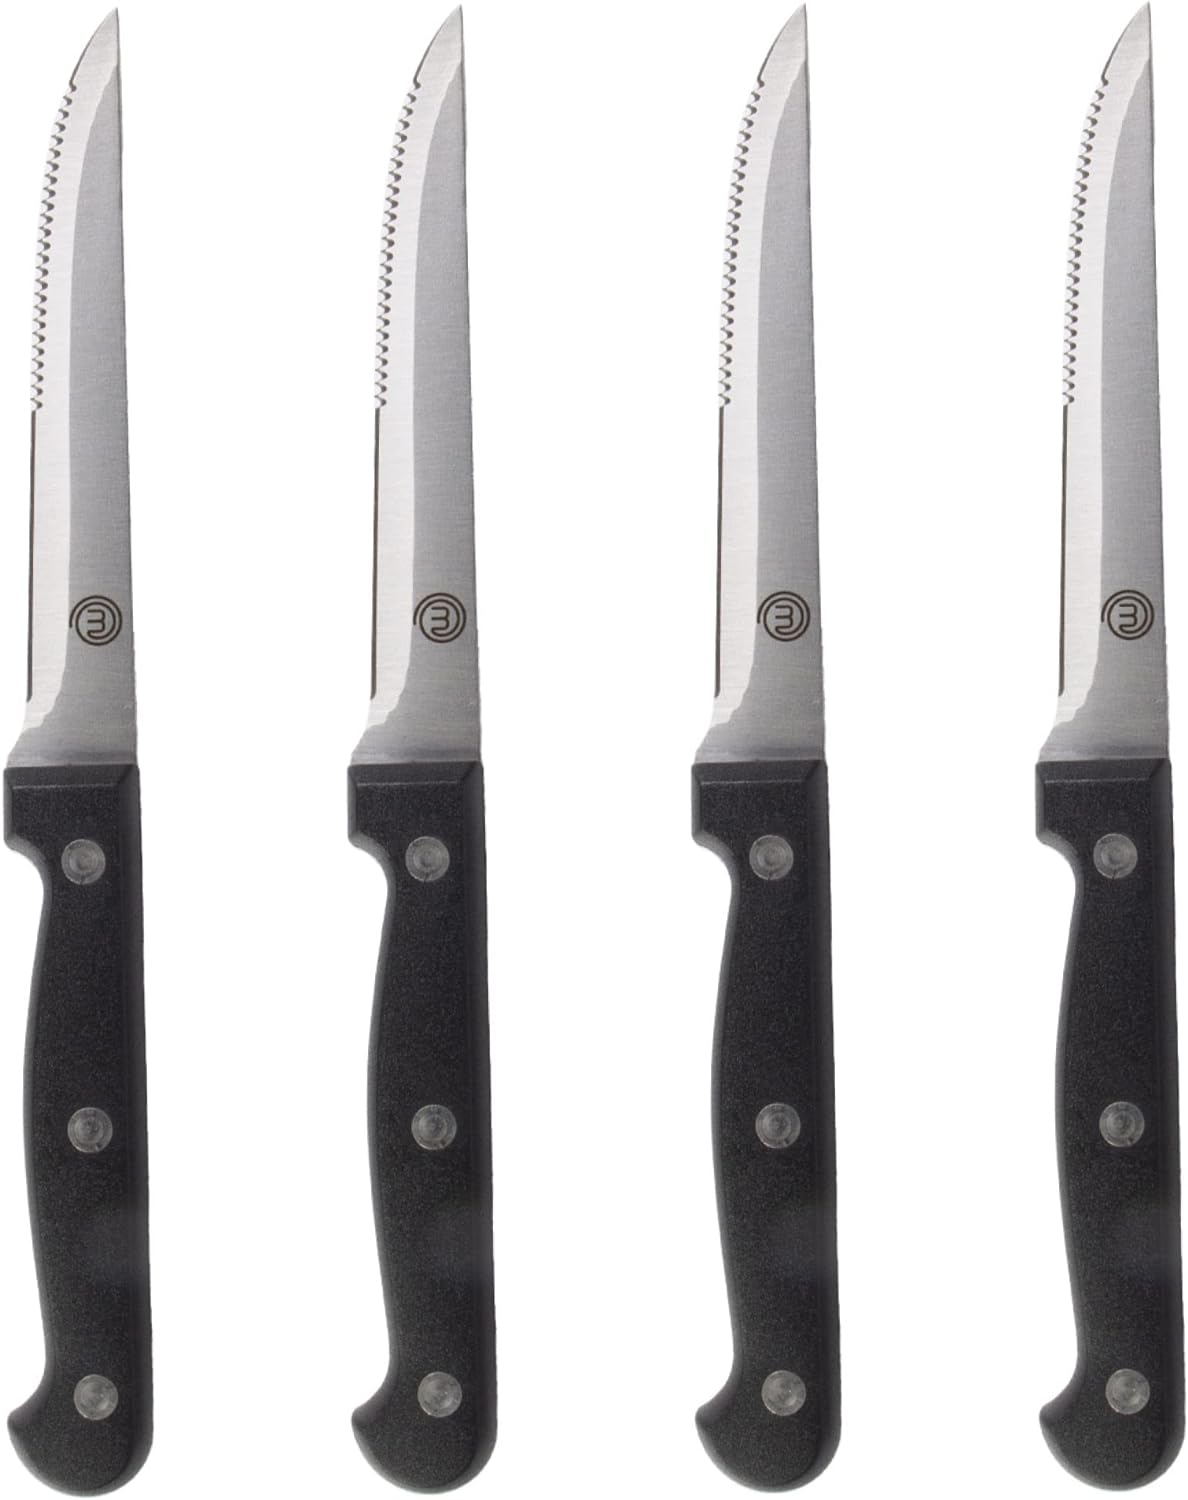 I migliori coltelli da bistecca: 7 consigliati da noi, coltelli, bistecca, Masterchef, Amazon